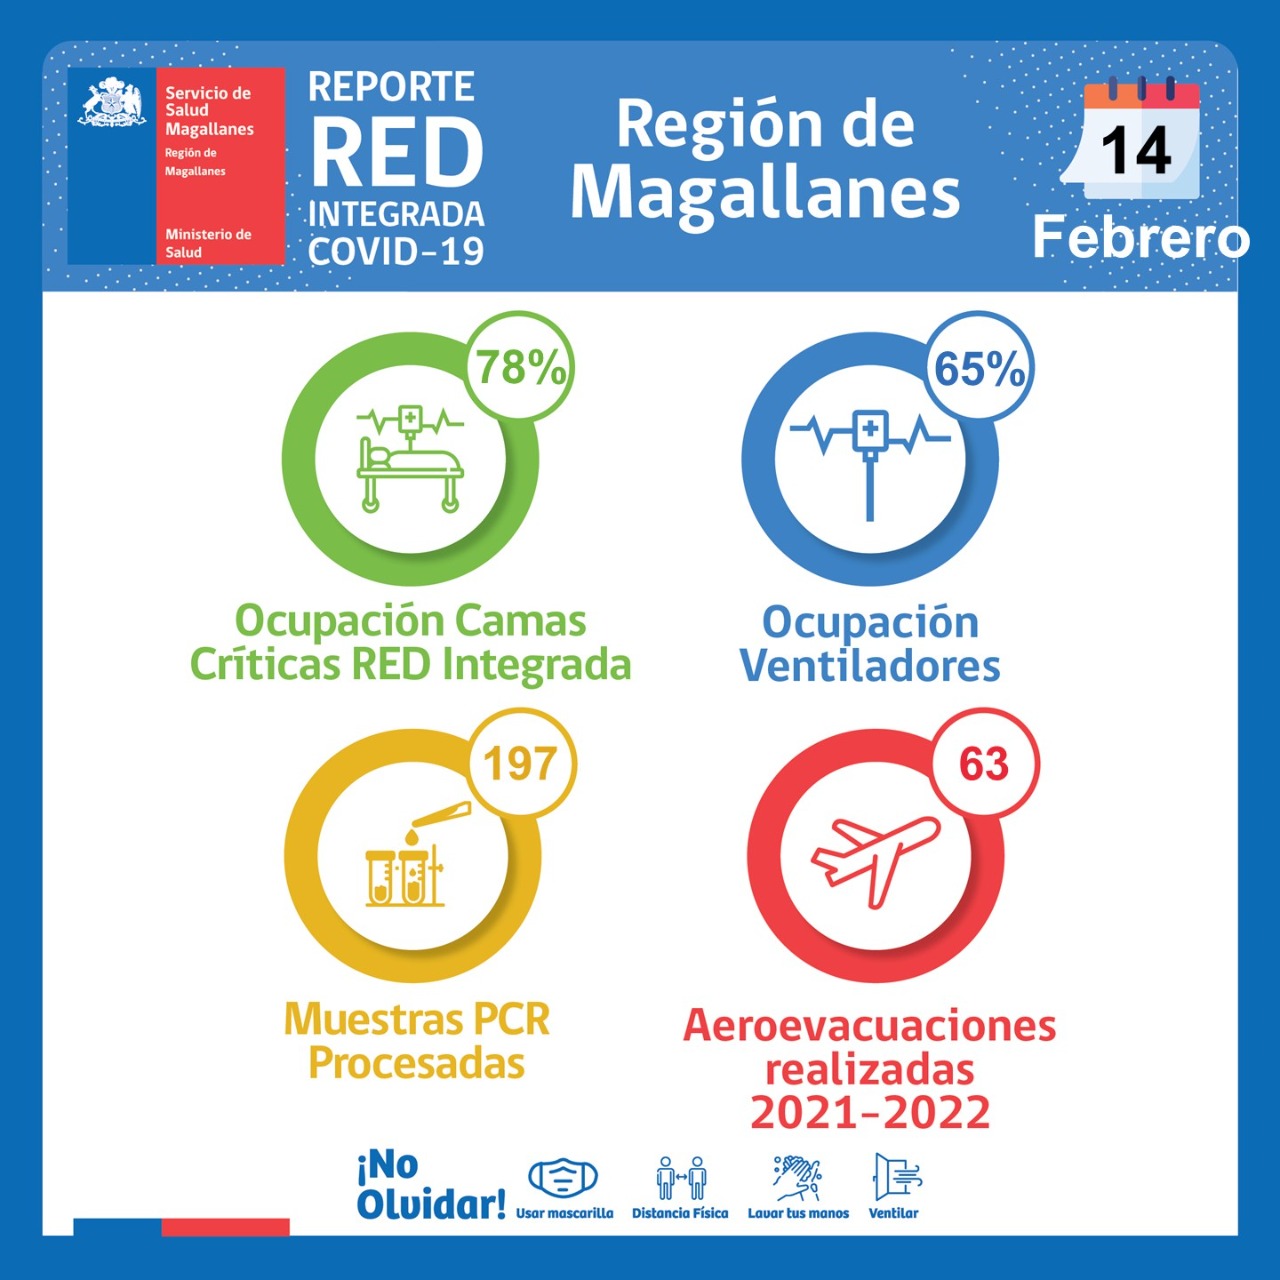 Estado de la red integrada covid19 en Magallanes, lunes 14 de febrero